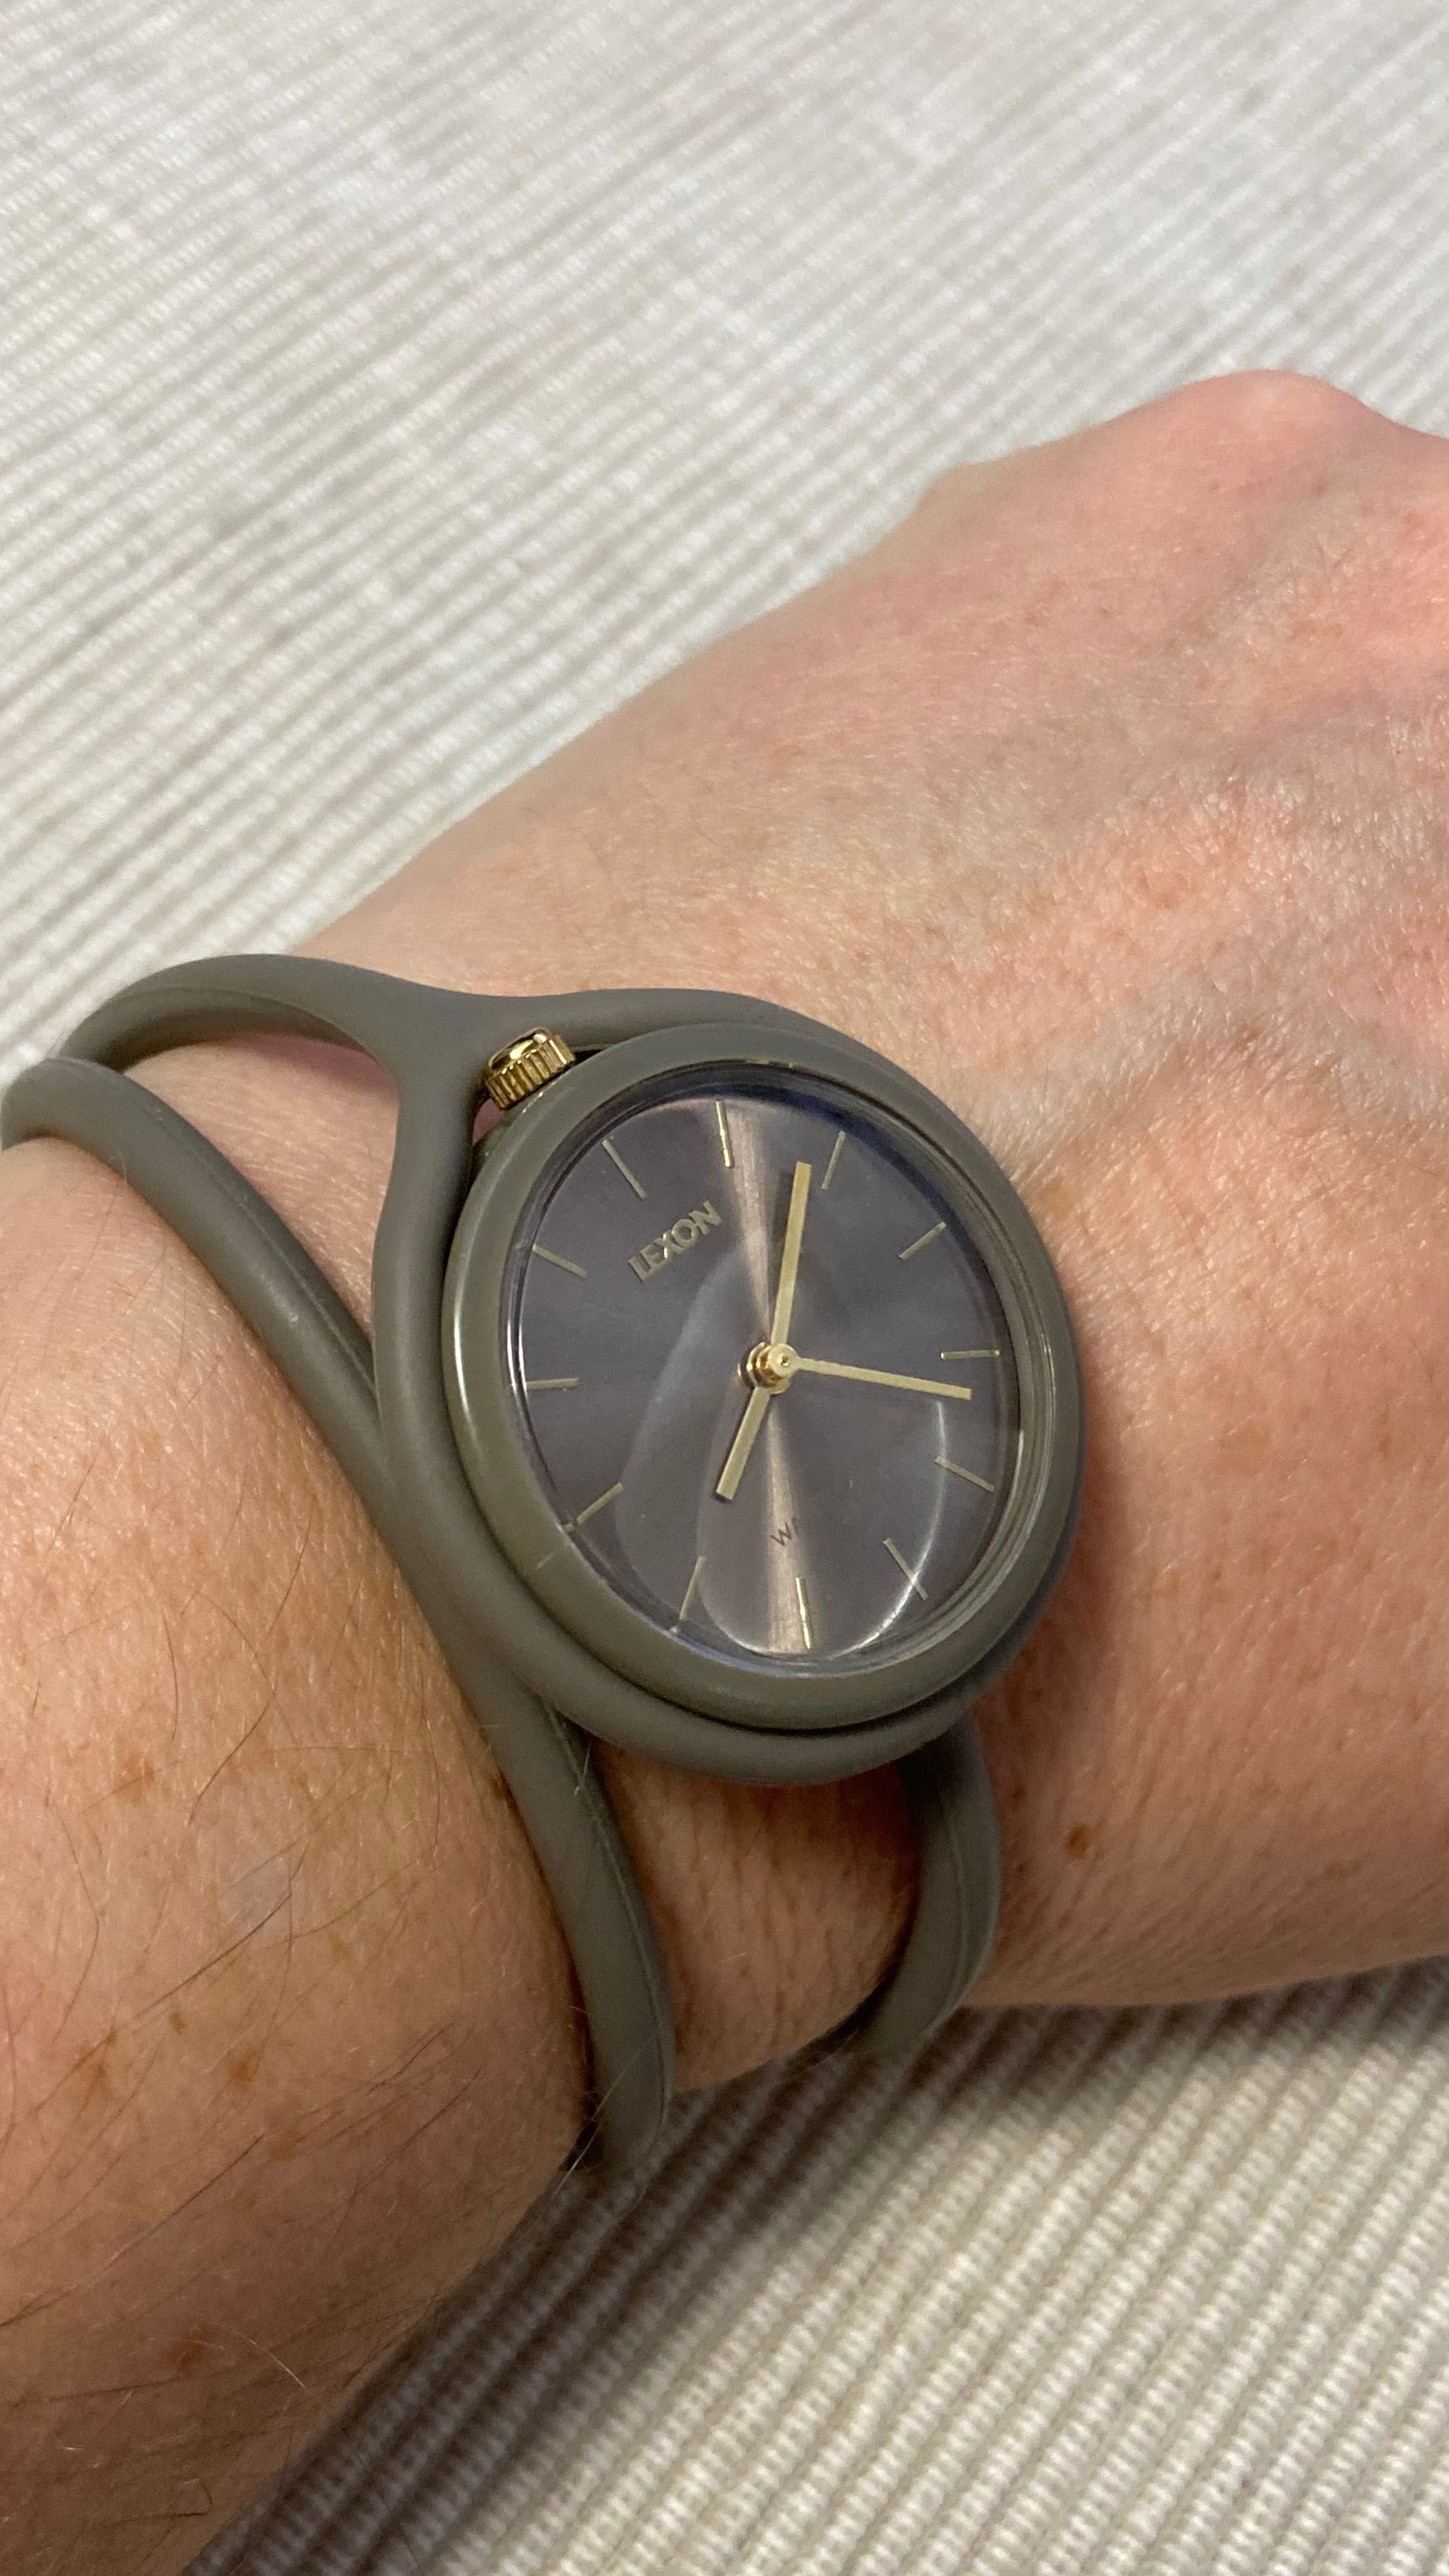 Zegarek damski na silikonowym podwójnym pasku LEXON